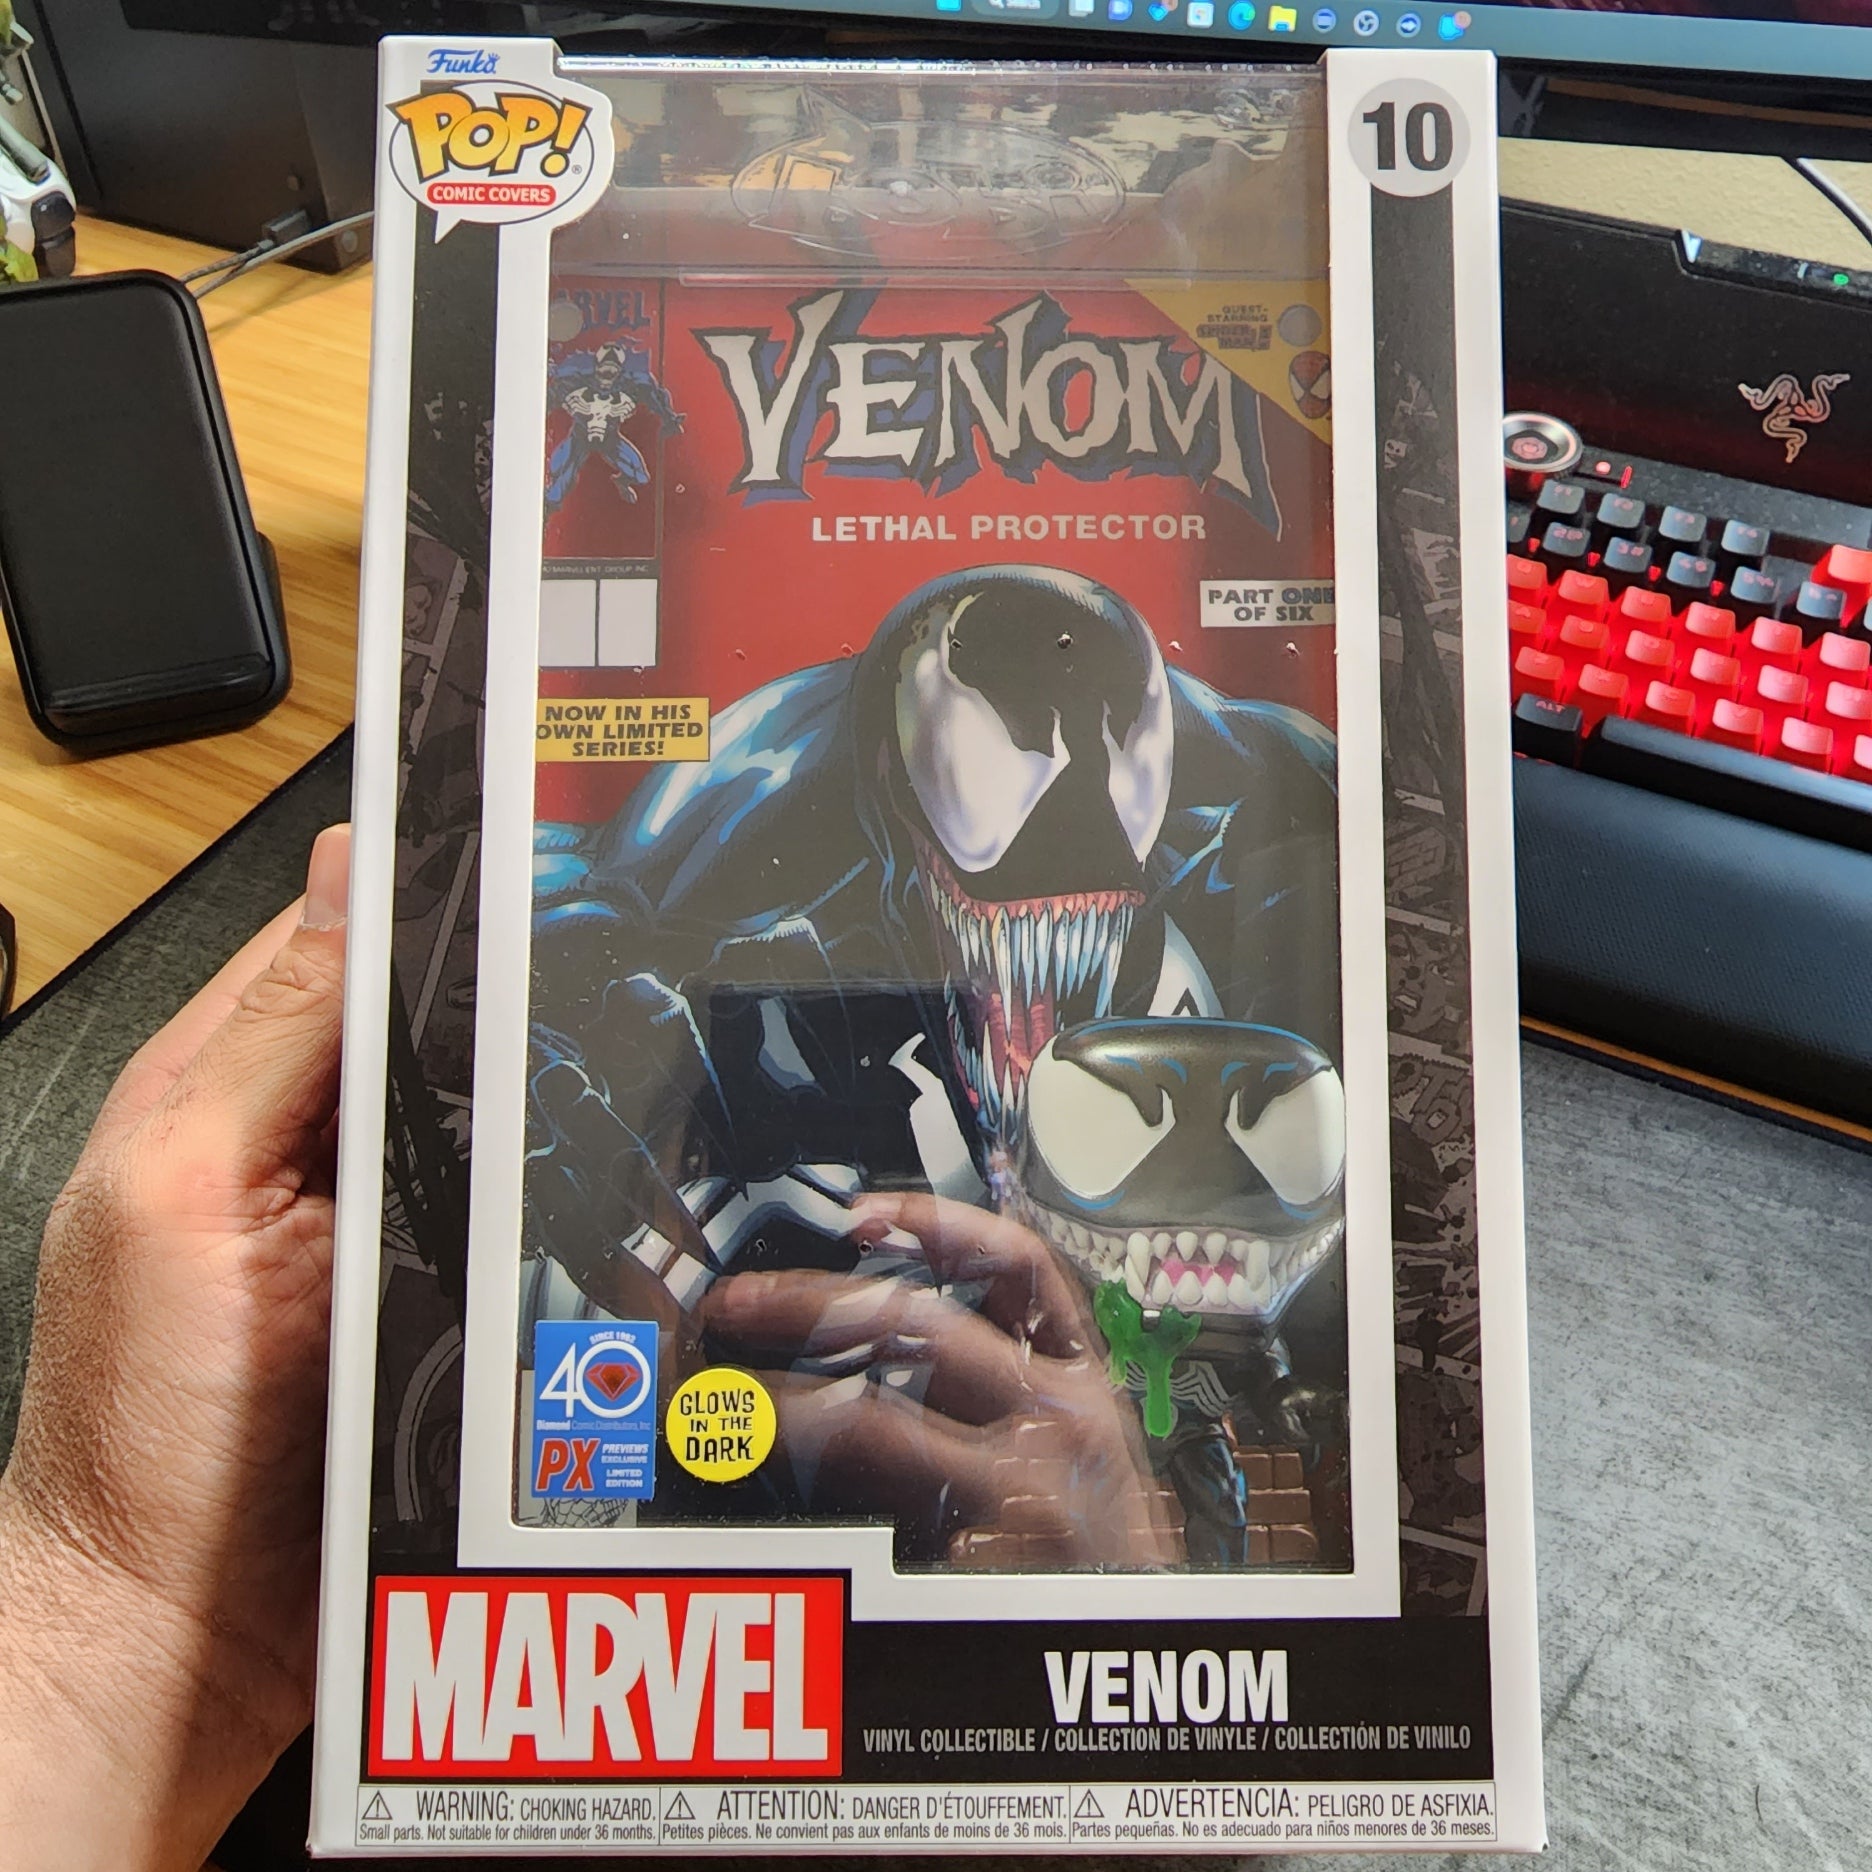 Marvel Venom Glow-in-the-Dark Pop! Lethal Protector Comic Cover